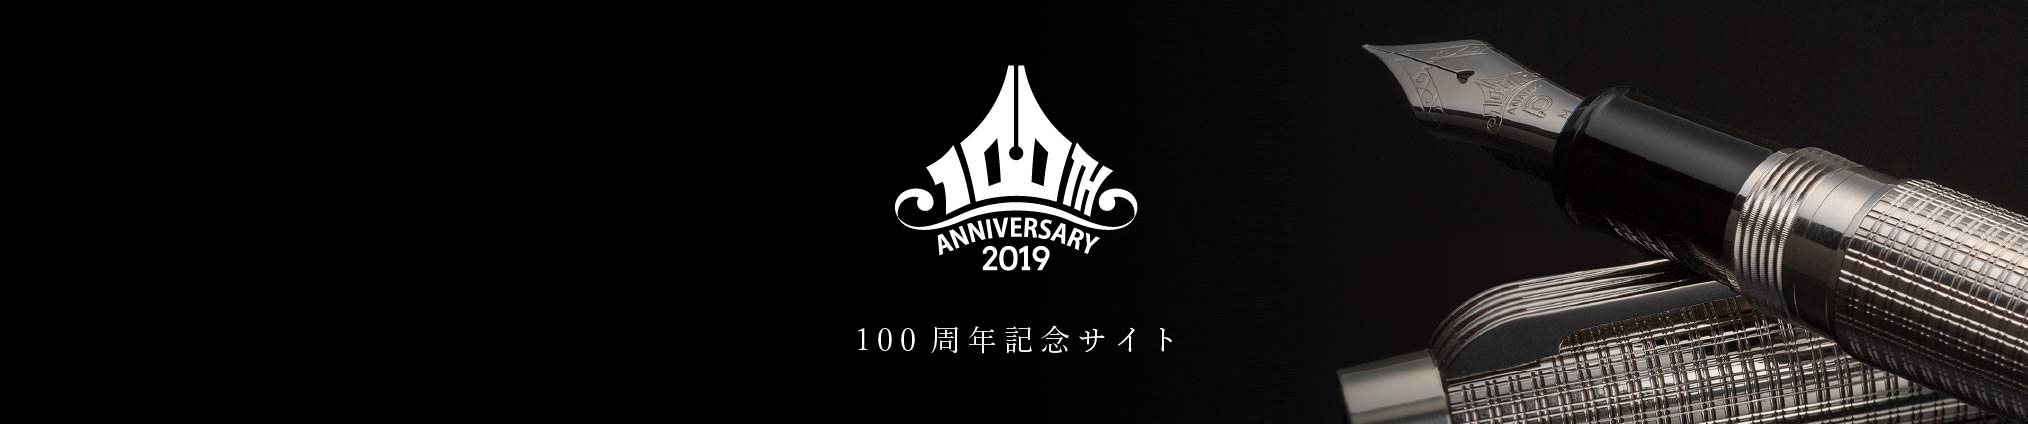 ANNIVERSARY 2019 100周年記念サイト